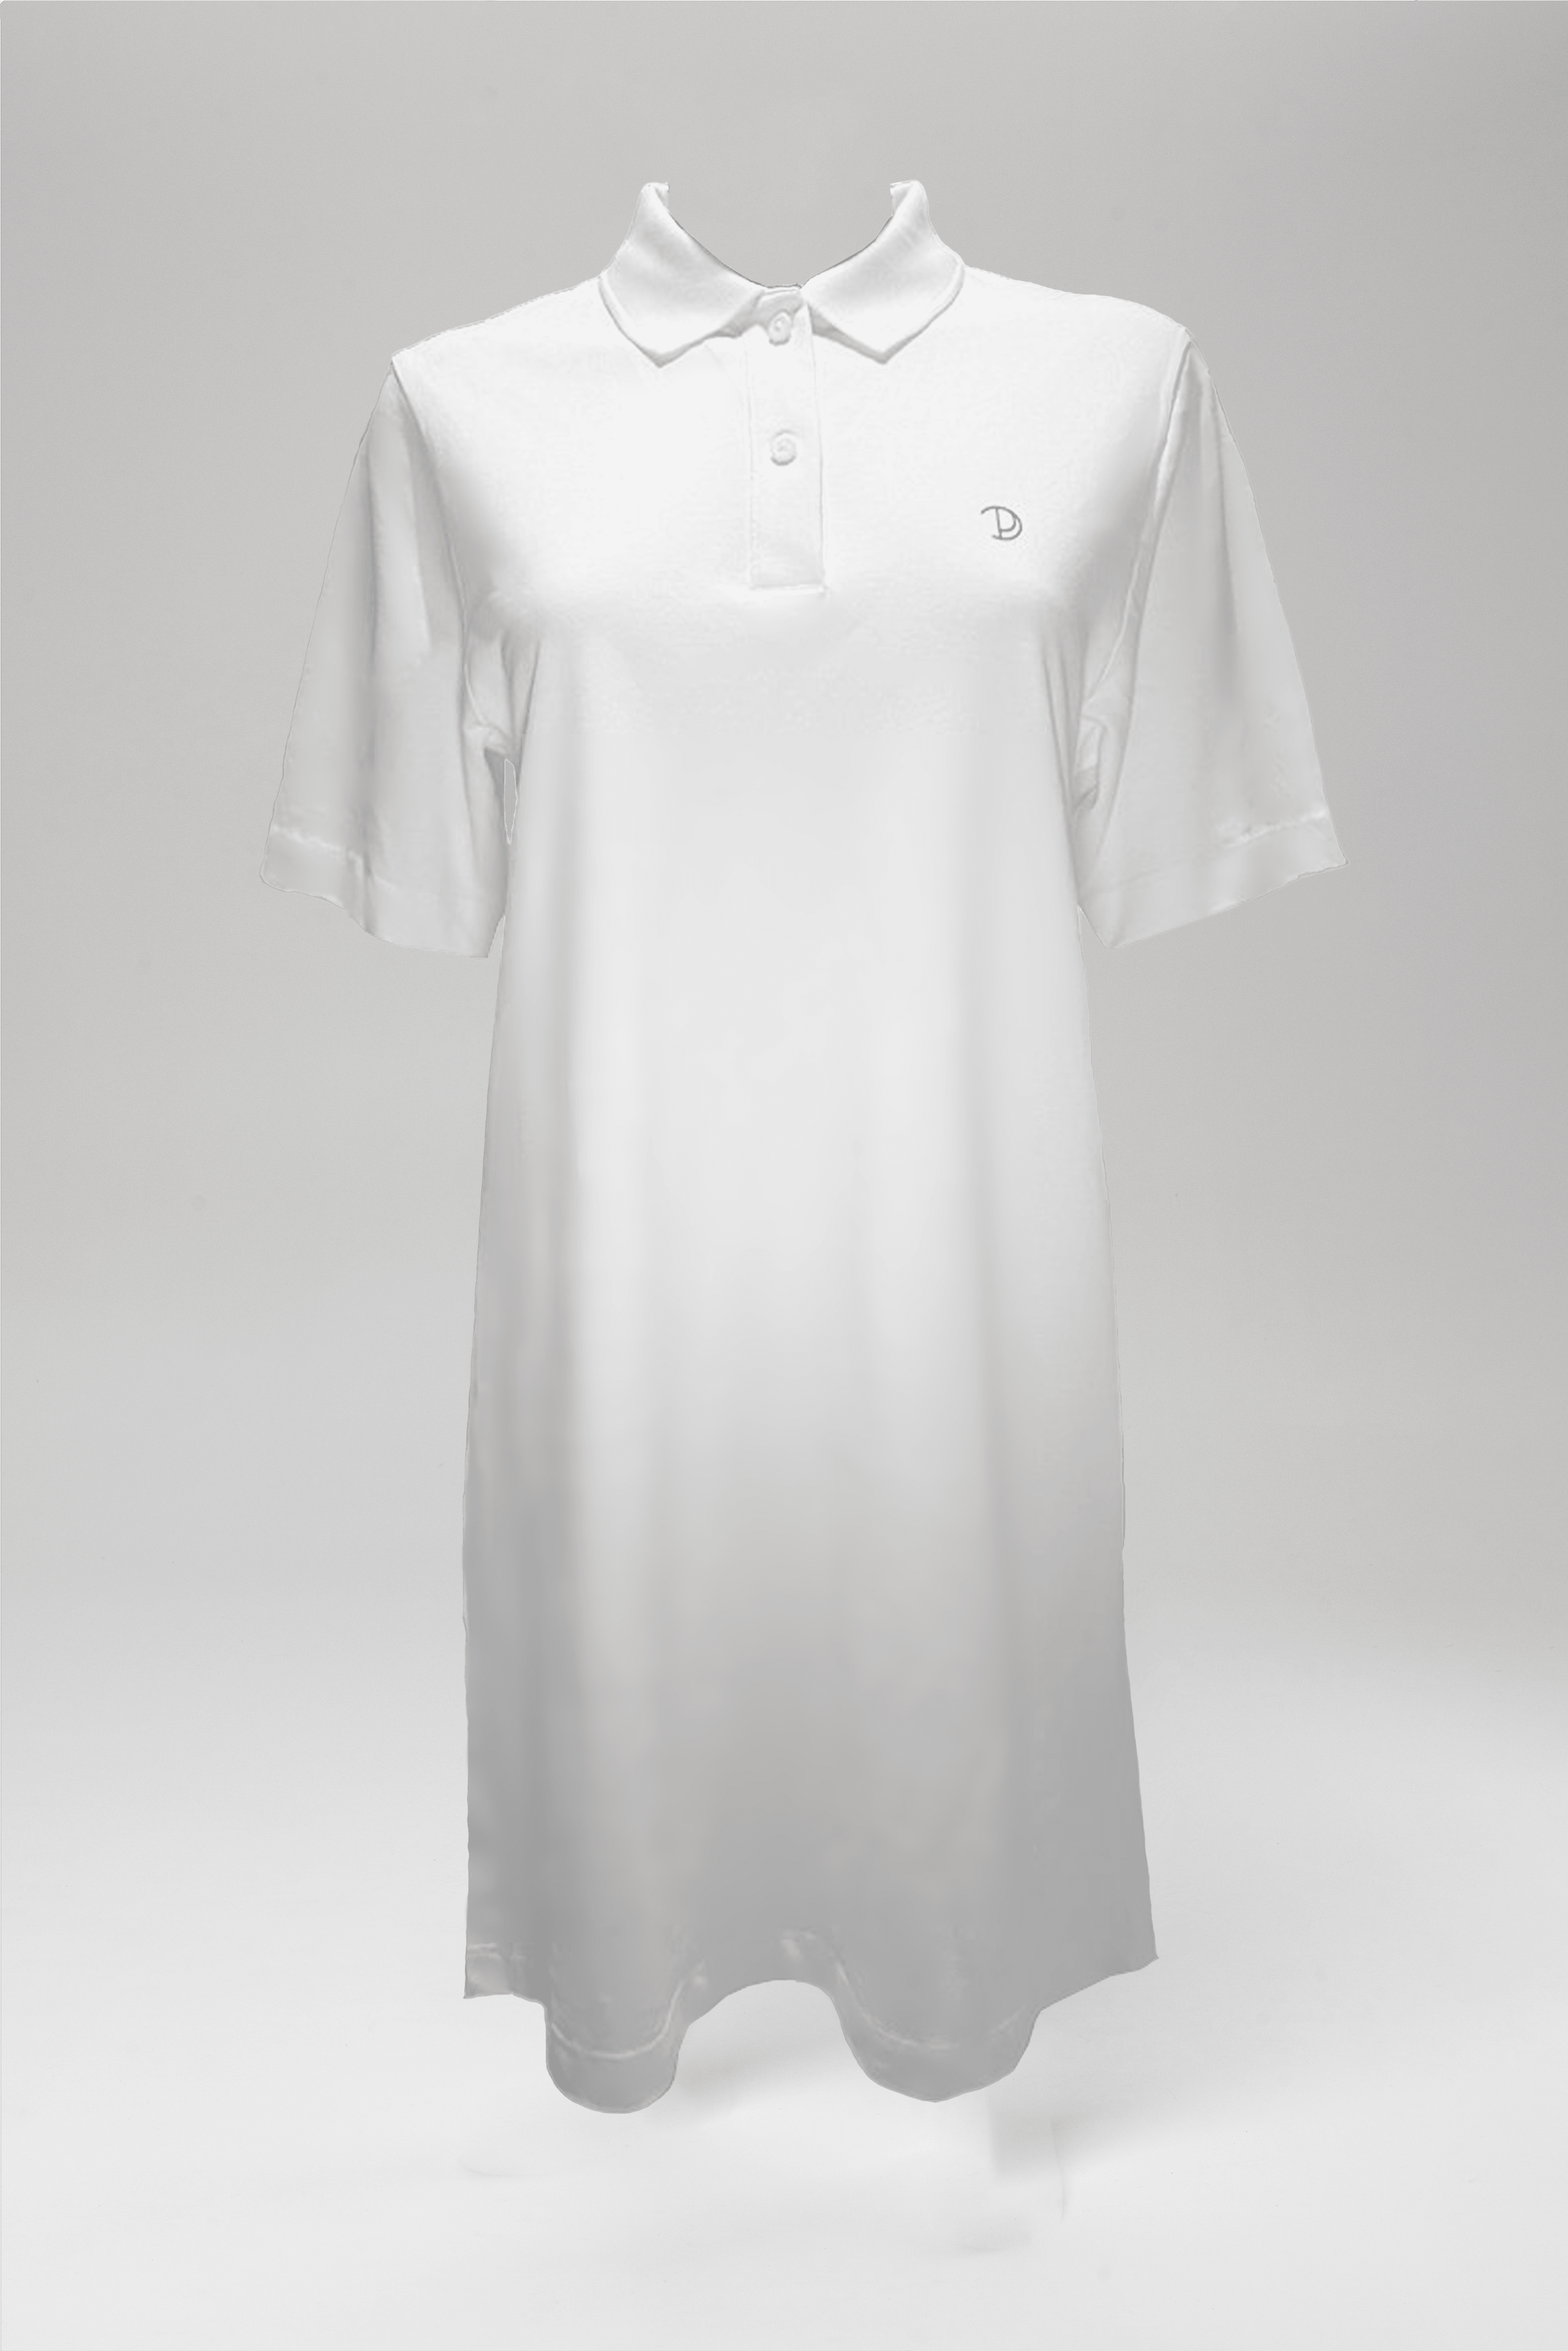 Image of Printed P Polo Shirt Dress